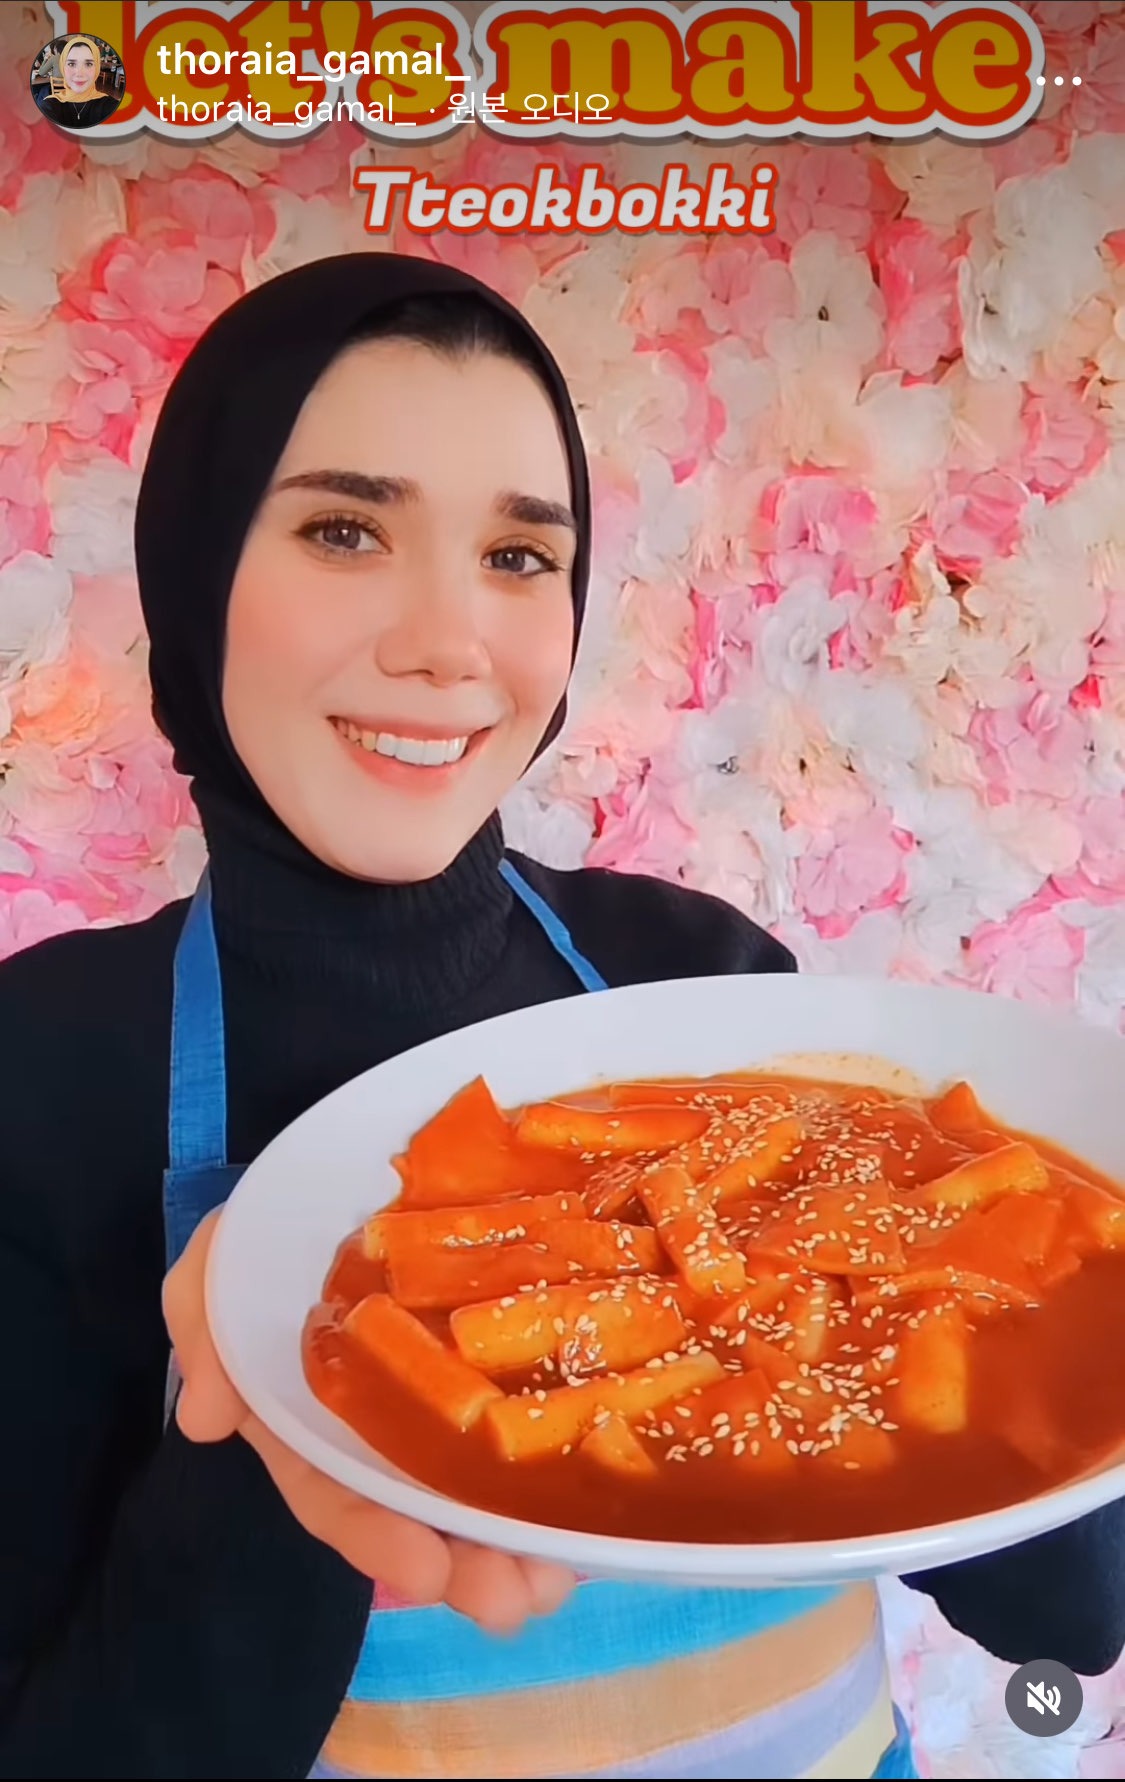 먹음직스러운 한국 음식을 선보이는 쏘라이아 가말